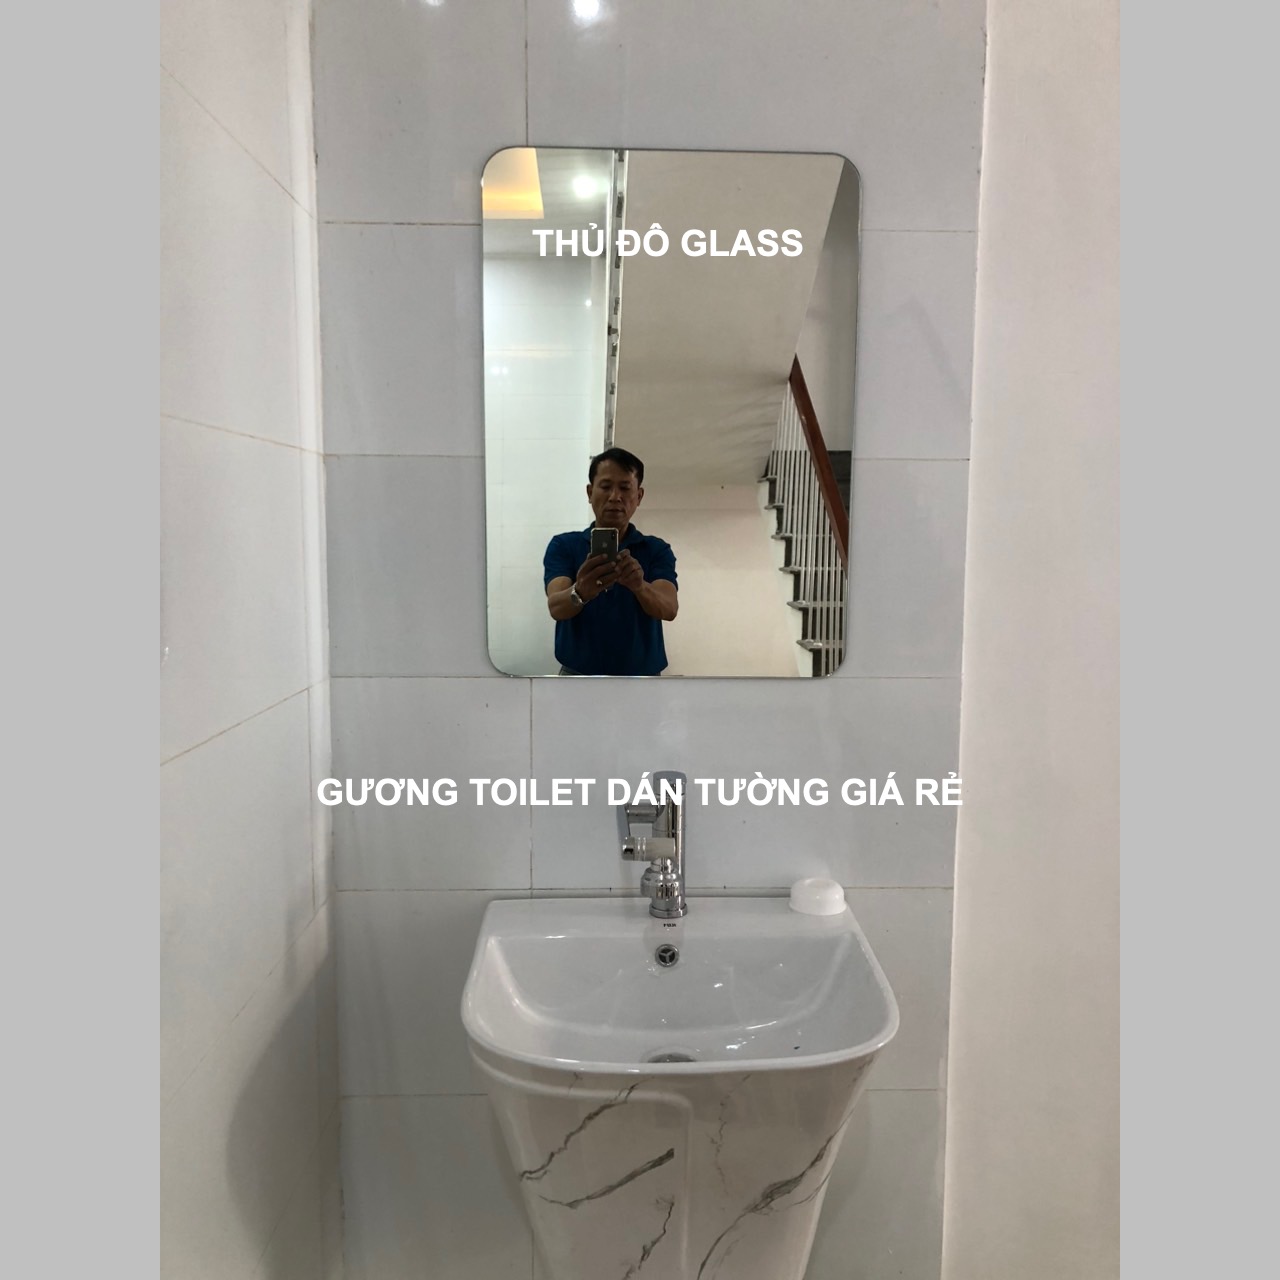 Gương toilet dán tường giá rẻ